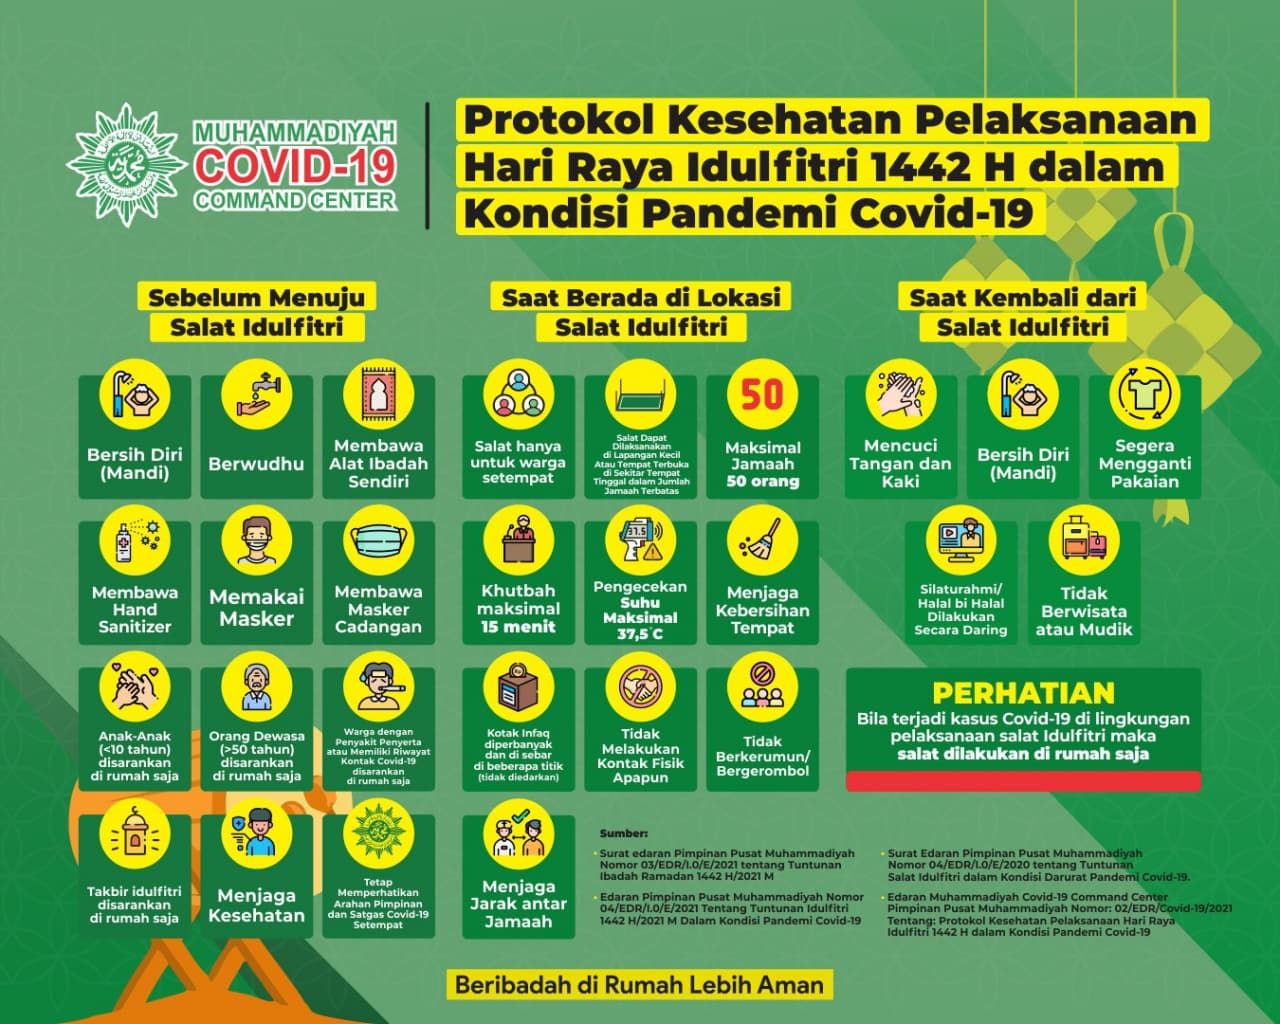 Protokol Kesehatan Pelaksanaan Hari Raya Idul Fitri 1442 H dari Muhammadiyah COVID-19 Command Center (Twitter/mucovid19)